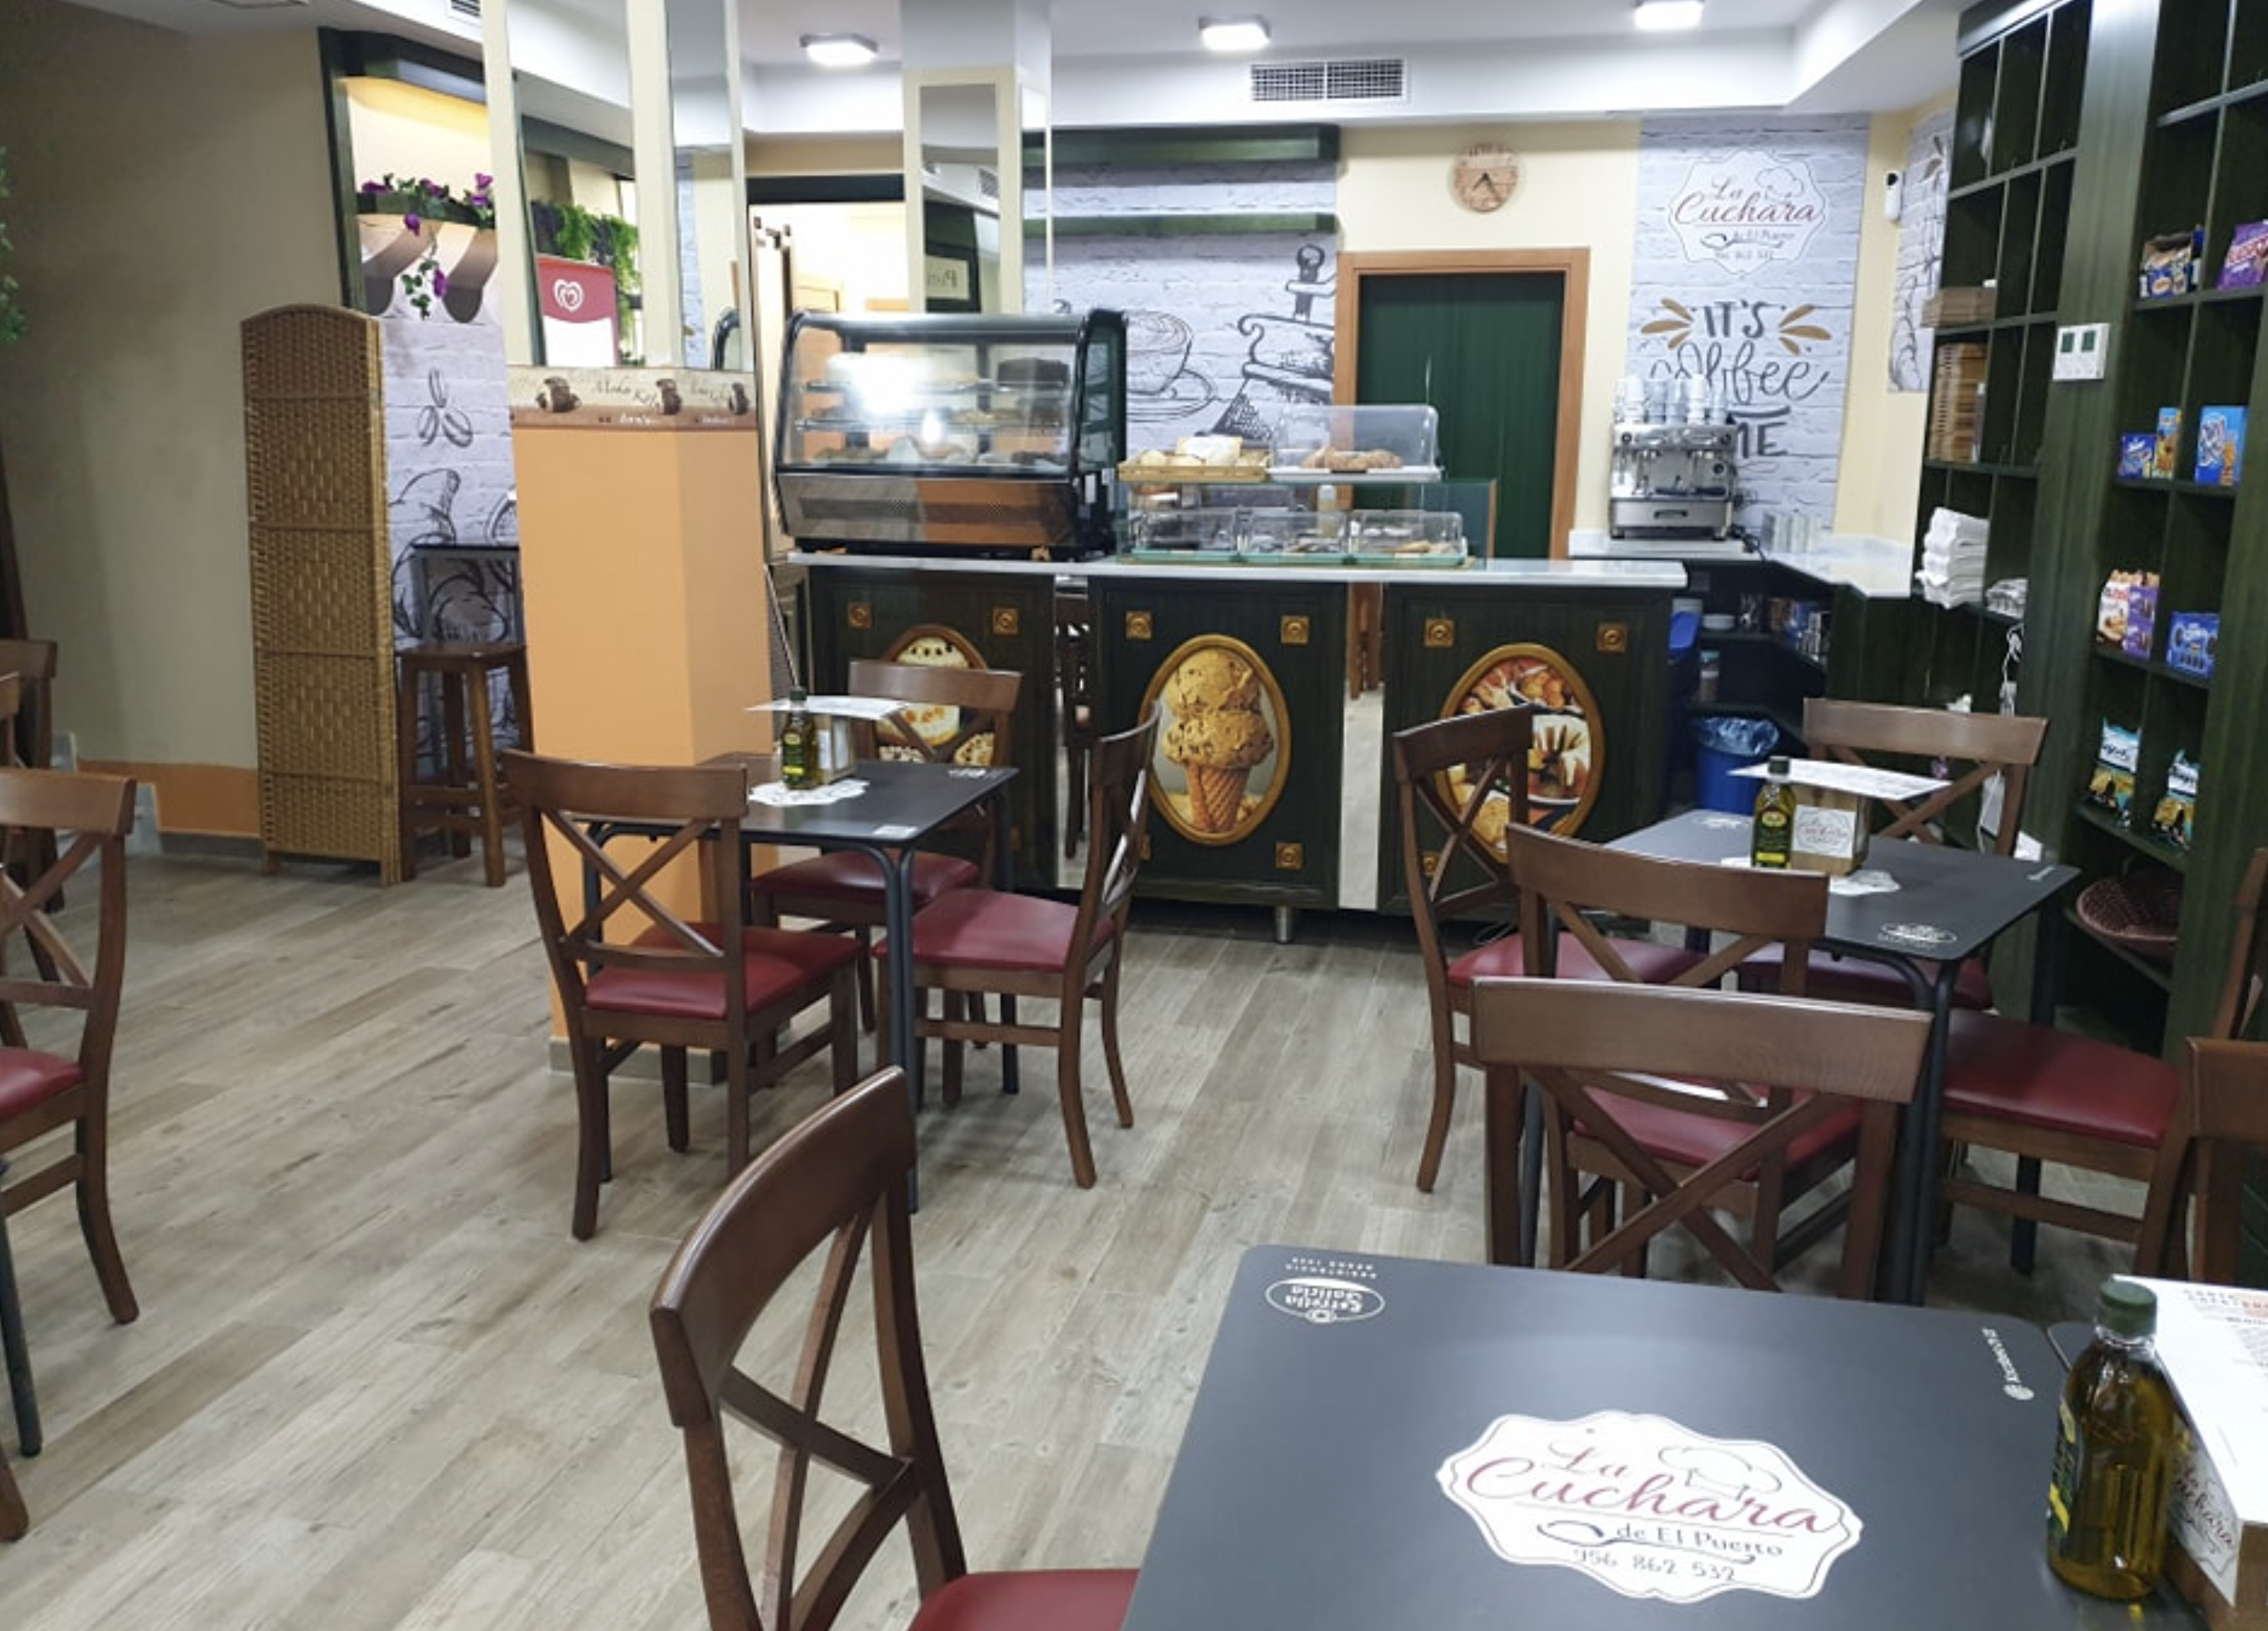 Inauguran una nueva cafetería en la calle Pedro Muñoz Seca, en un local cerrado durante más de 20 años.